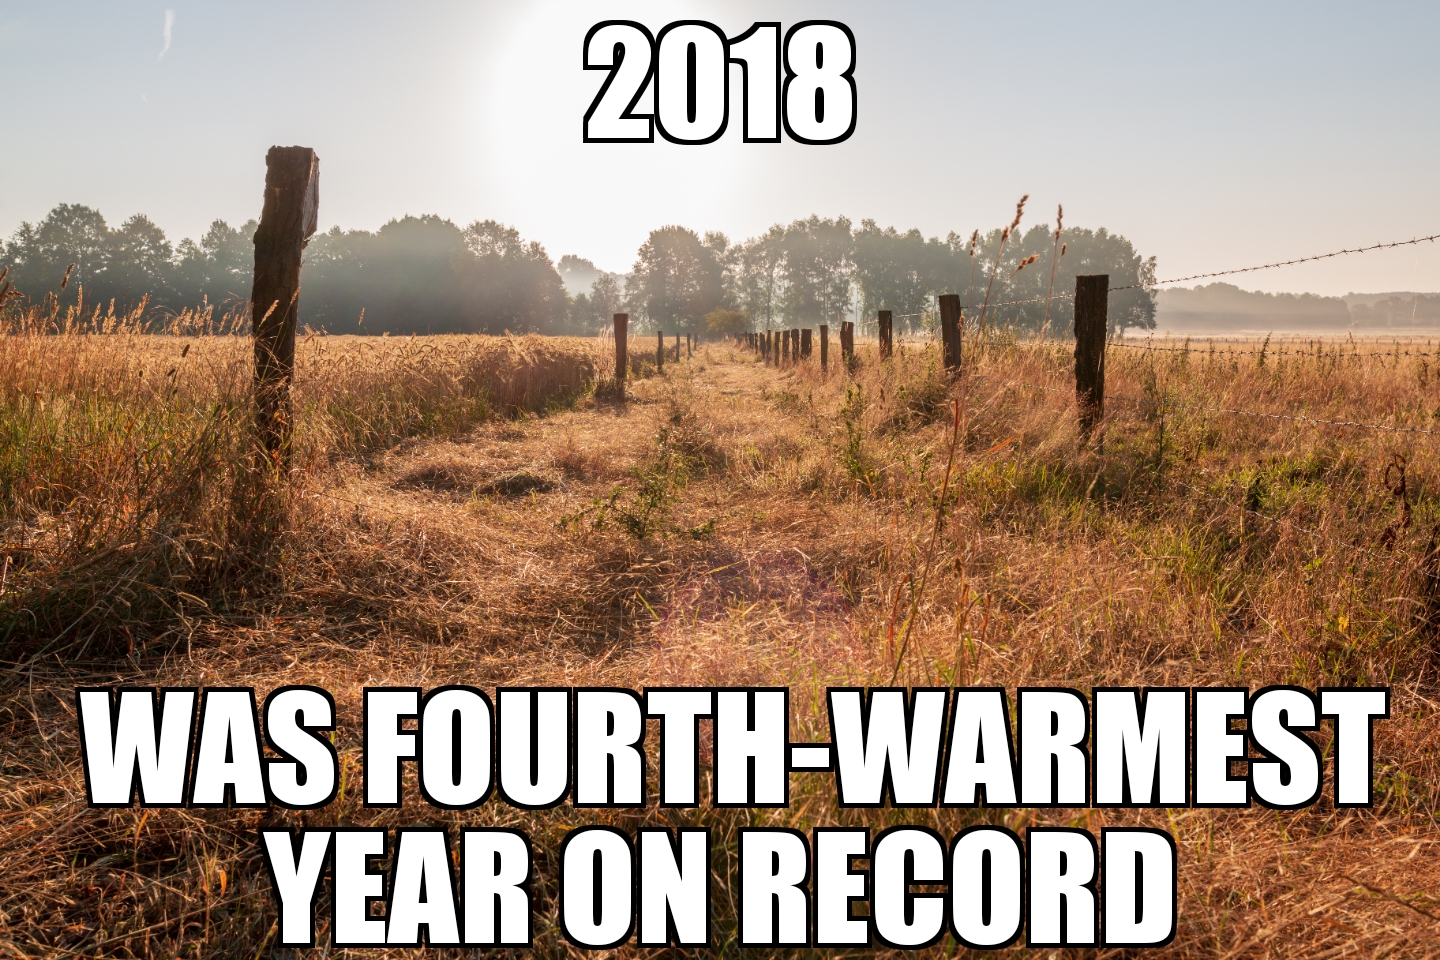 2018 was 4th warmest year